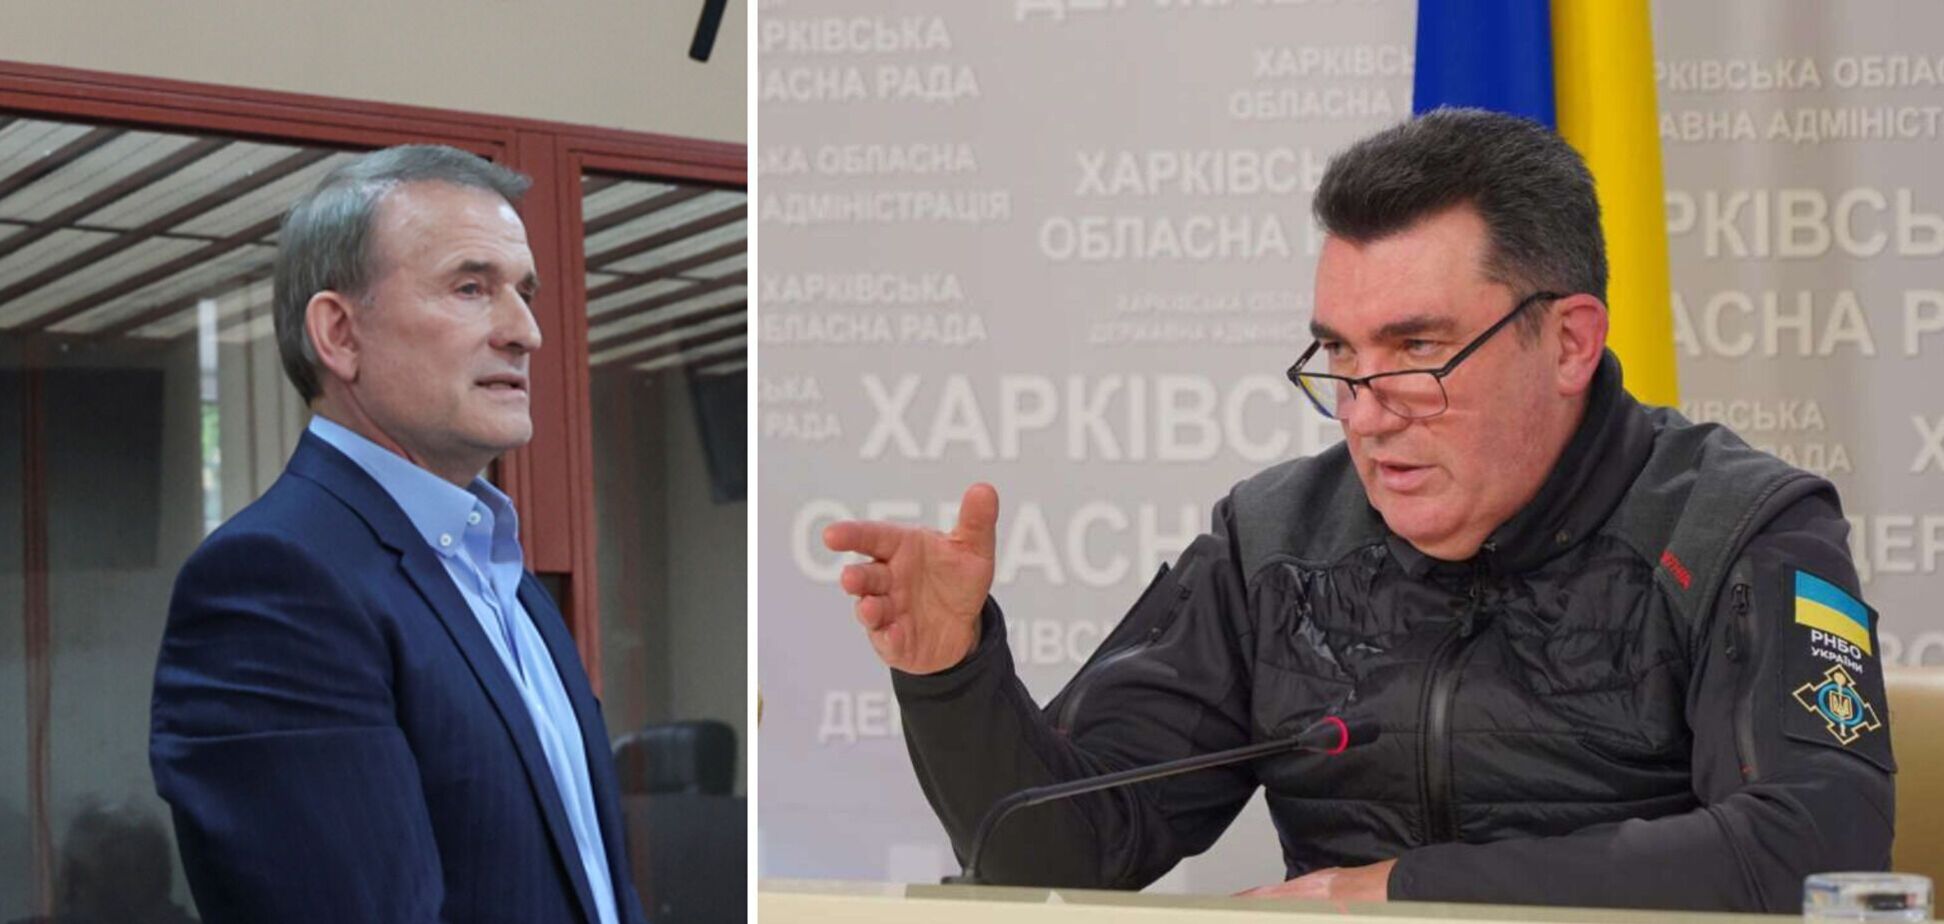 Данілов закликав спростити процедуру покарання колаборантів та пообіцяв 'окрему розмову' з членами ОПЗЖ